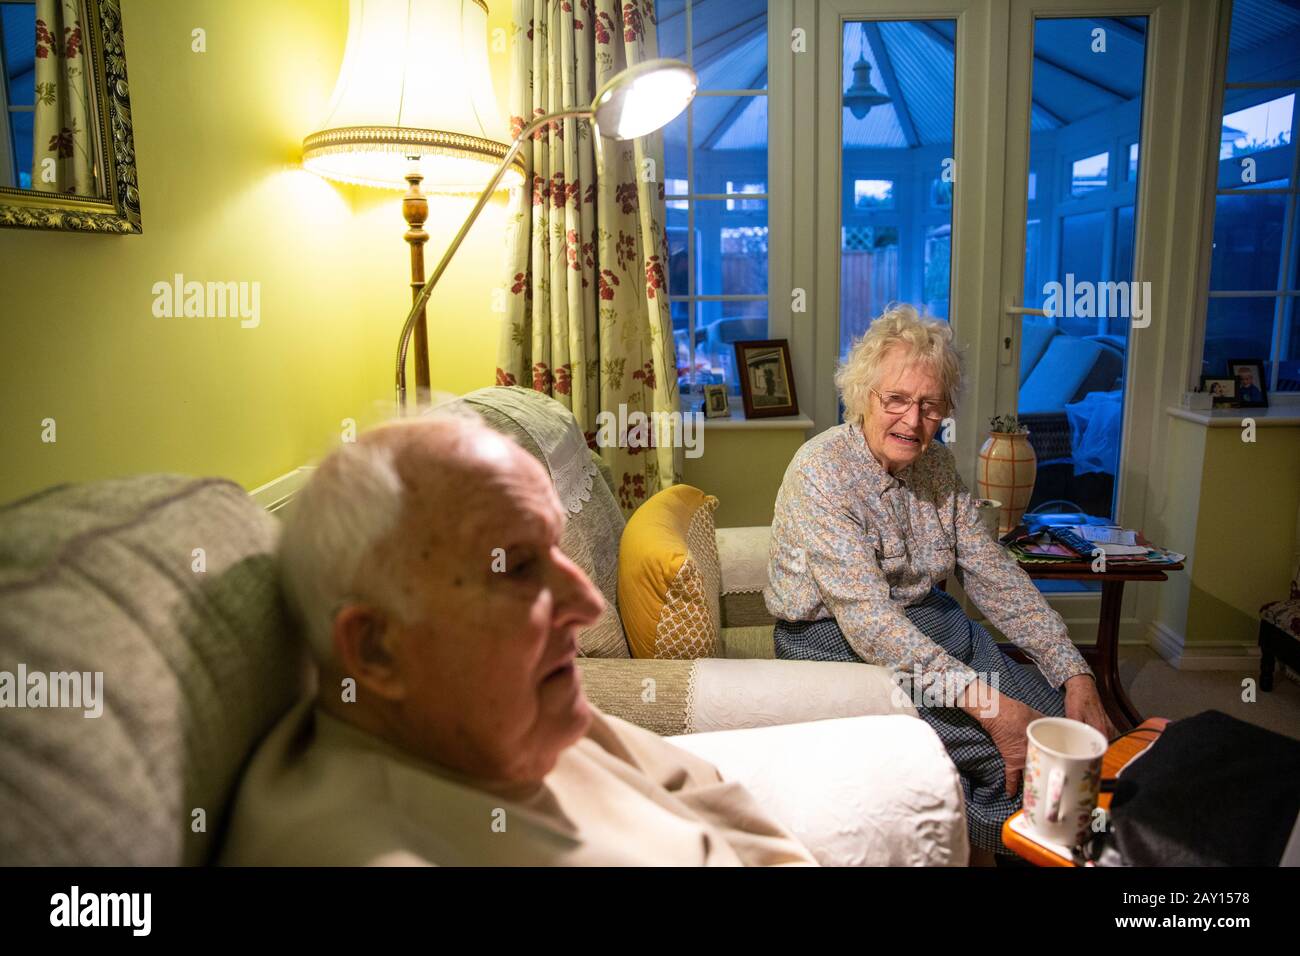 Los jubilados casados de la vejez ambos en sus años 80 que viven juntos en sus años del crepúsculo, Inglaterra, Reino Unido Foto de stock